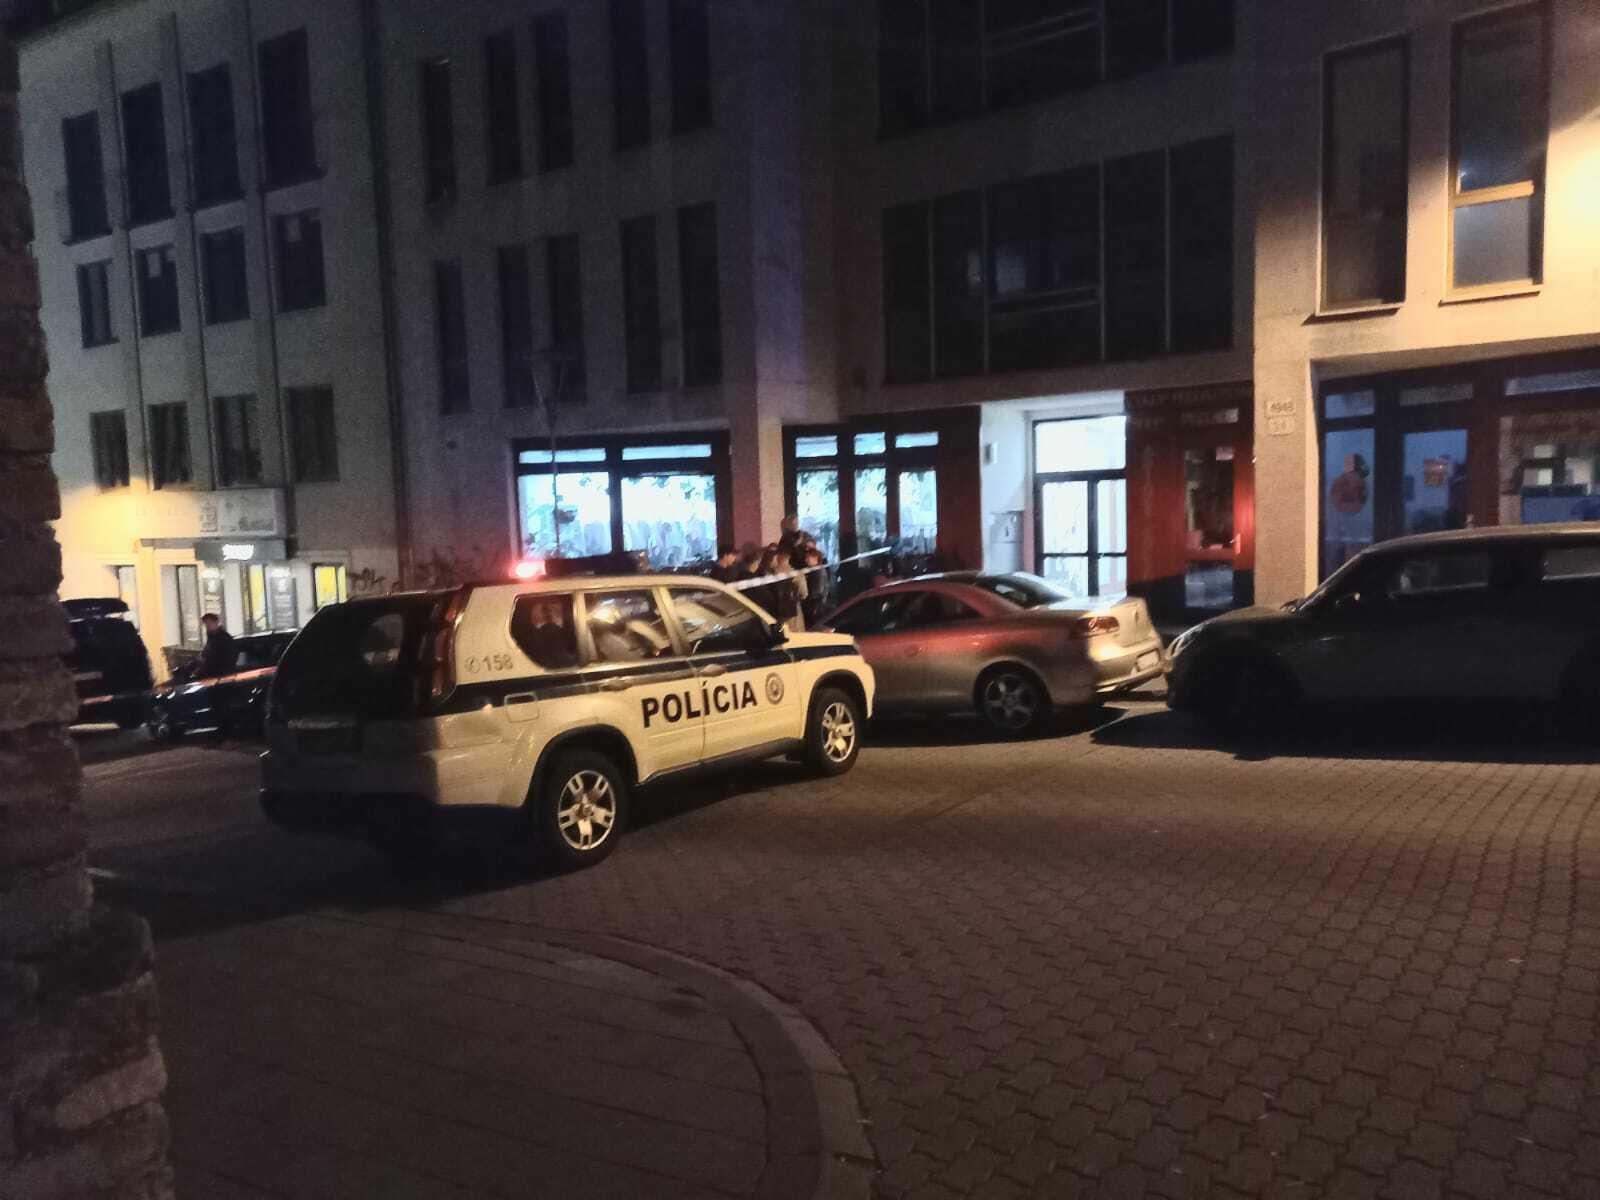 Streľba v centre Bratislavy: Na mieste sú dvaja mŕtvi